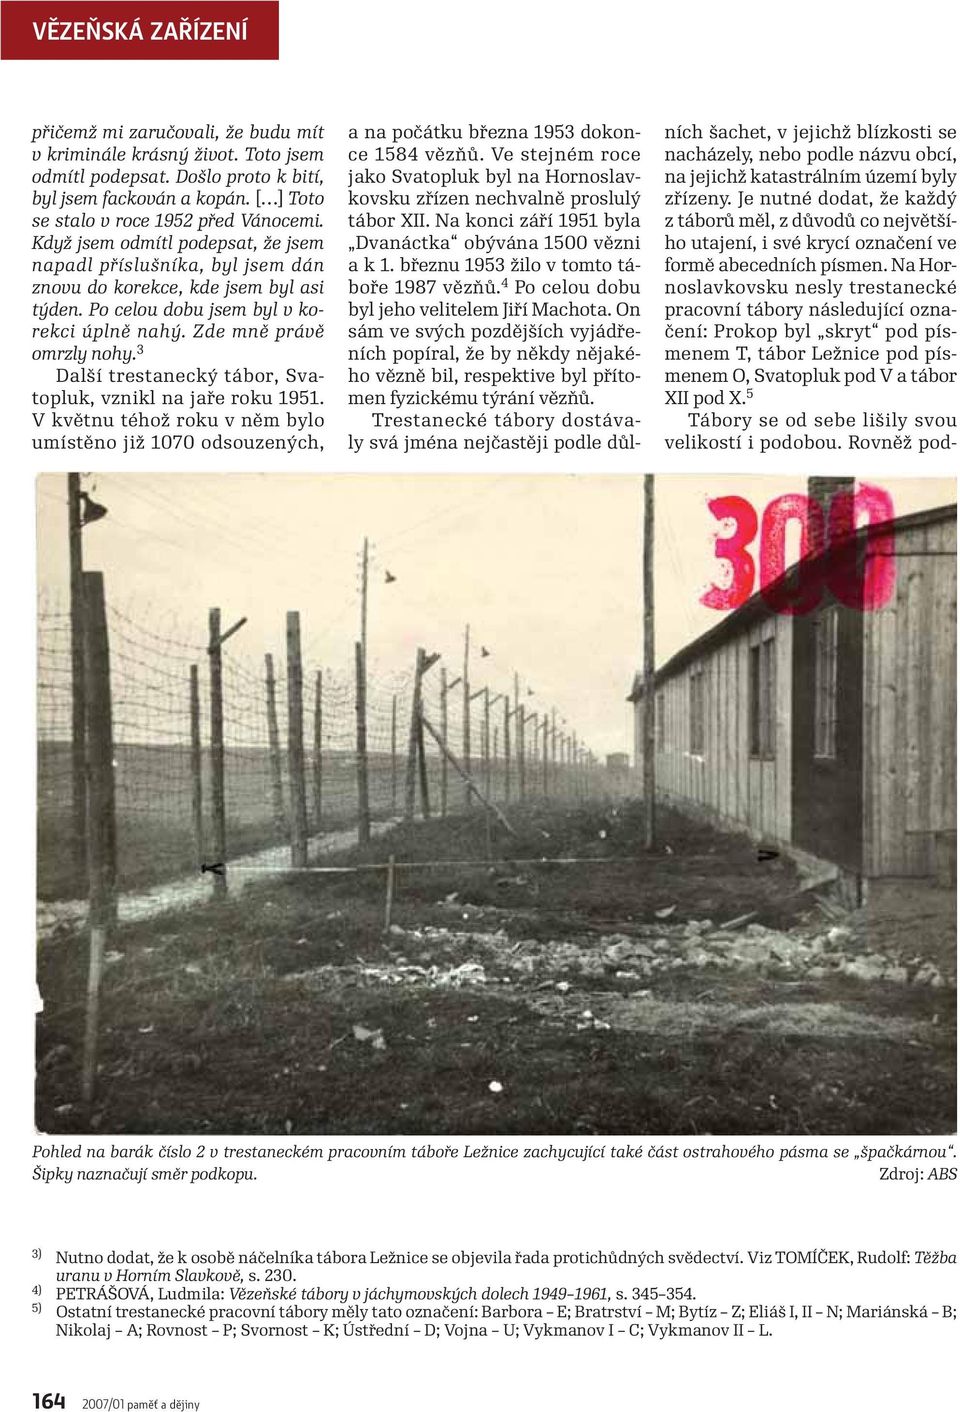 3 Další trestanecký tábor, Svatopluk, vznikl na jaře roku 1951. V květnu téhož roku v něm bylo umístěno již 1070 odsouzených, a na počátku března 1953 dokonce 1584 vězňů.